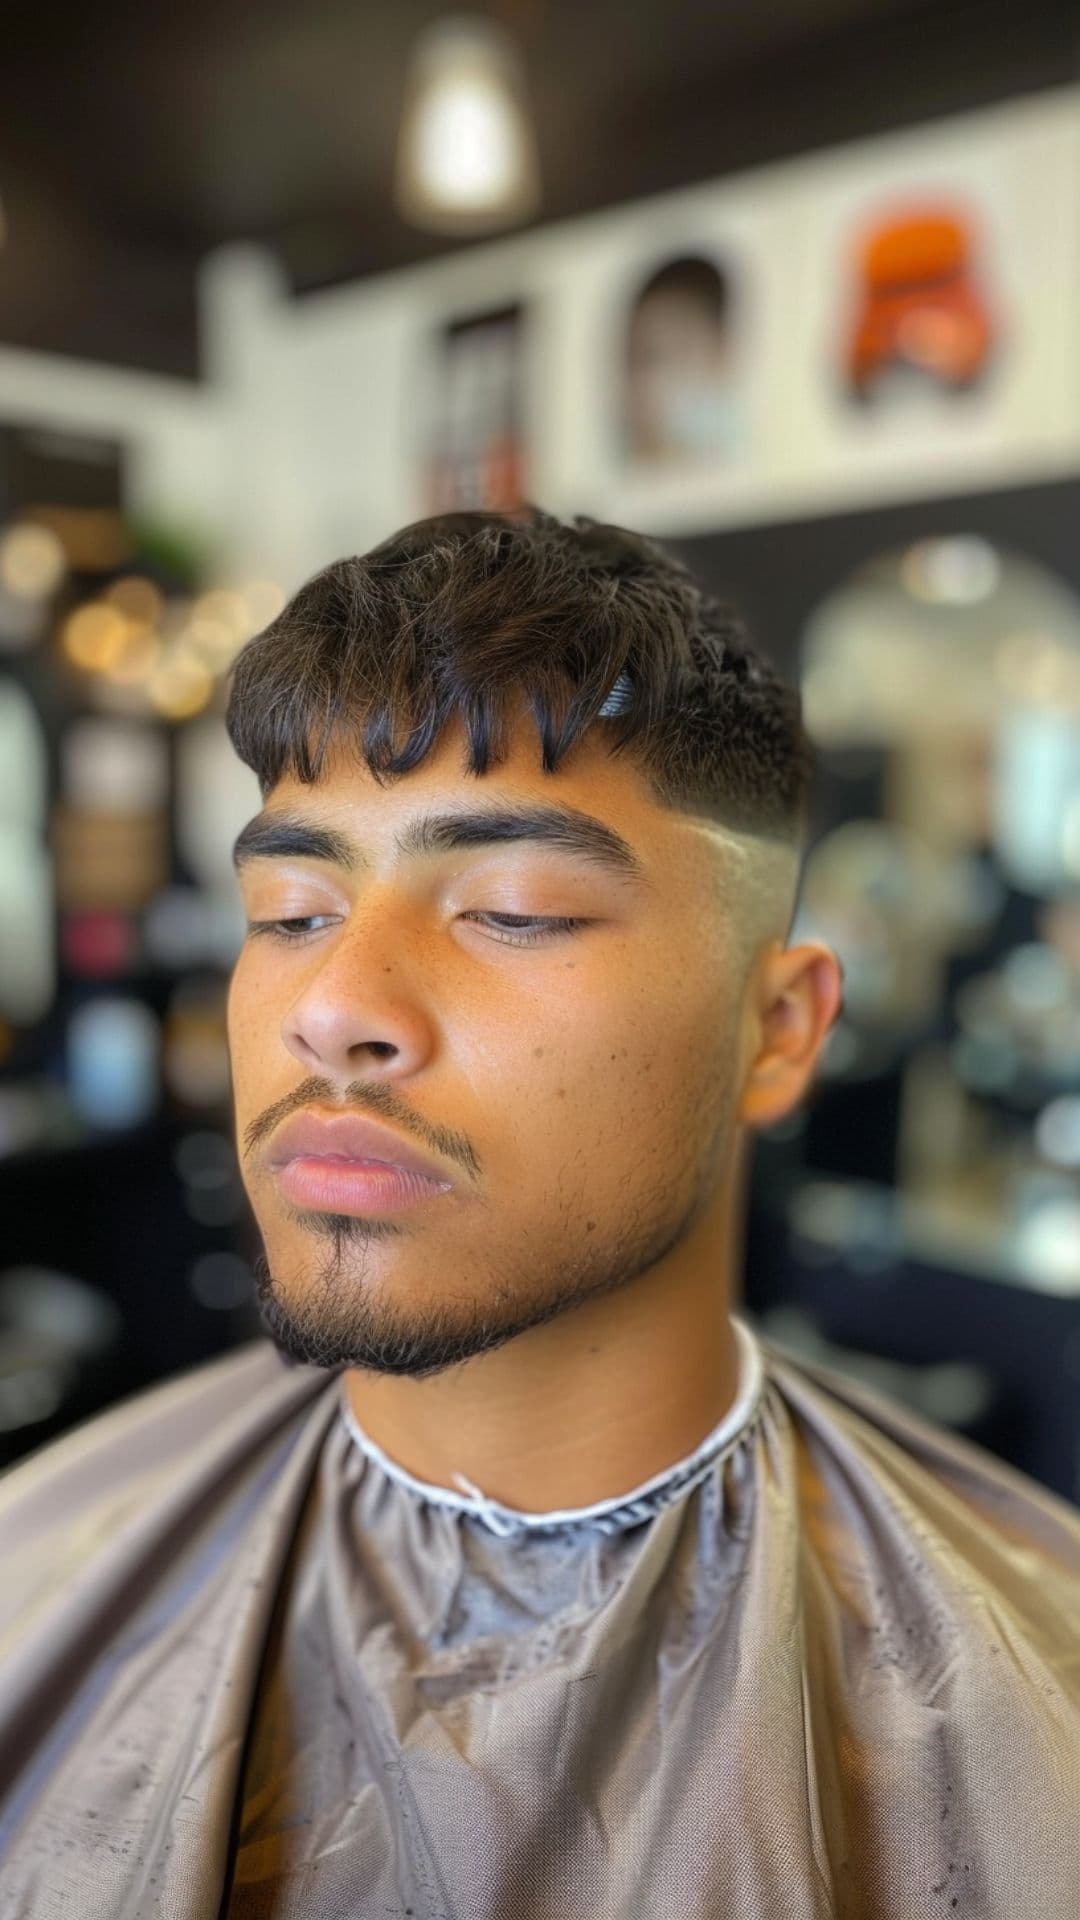 A man modelling a caesar haircut.